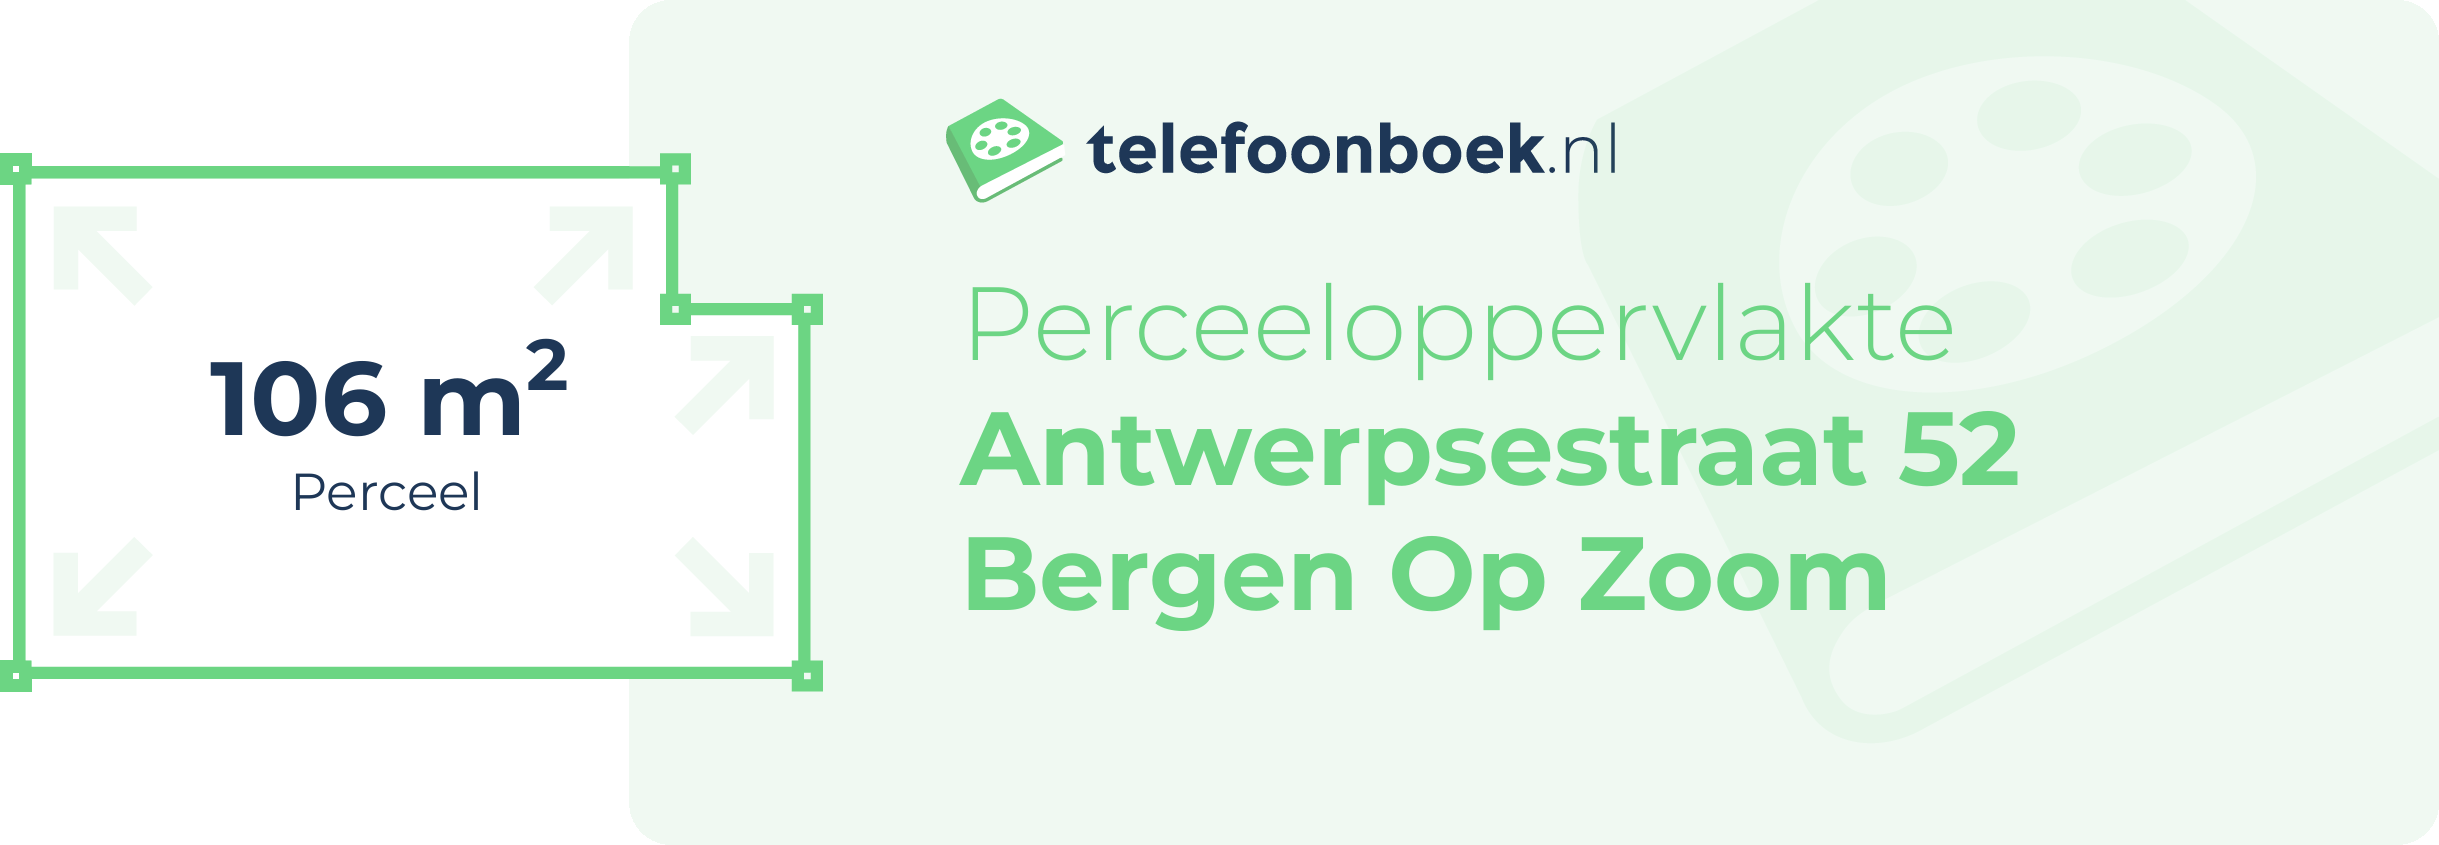 Perceeloppervlakte Antwerpsestraat 52 Bergen Op Zoom